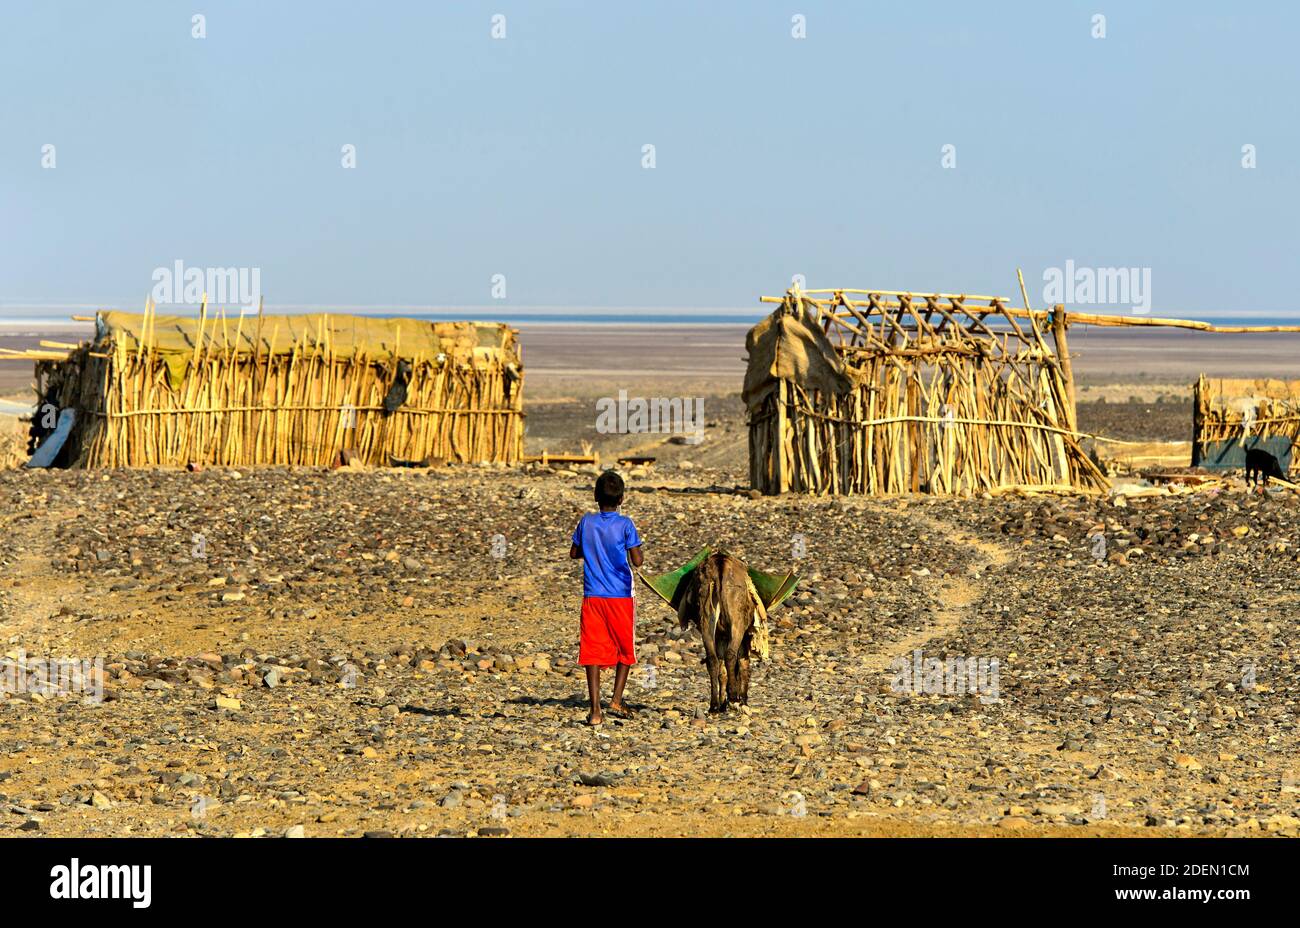 Kleiner Junge mit Esel in der Wüstensiedlung Hamadela, hinten traditionelle Unterkünfte der Afar Nomaden, HamadelaDanakil Senke, région d'Afar, Äthiopie Banque D'Images